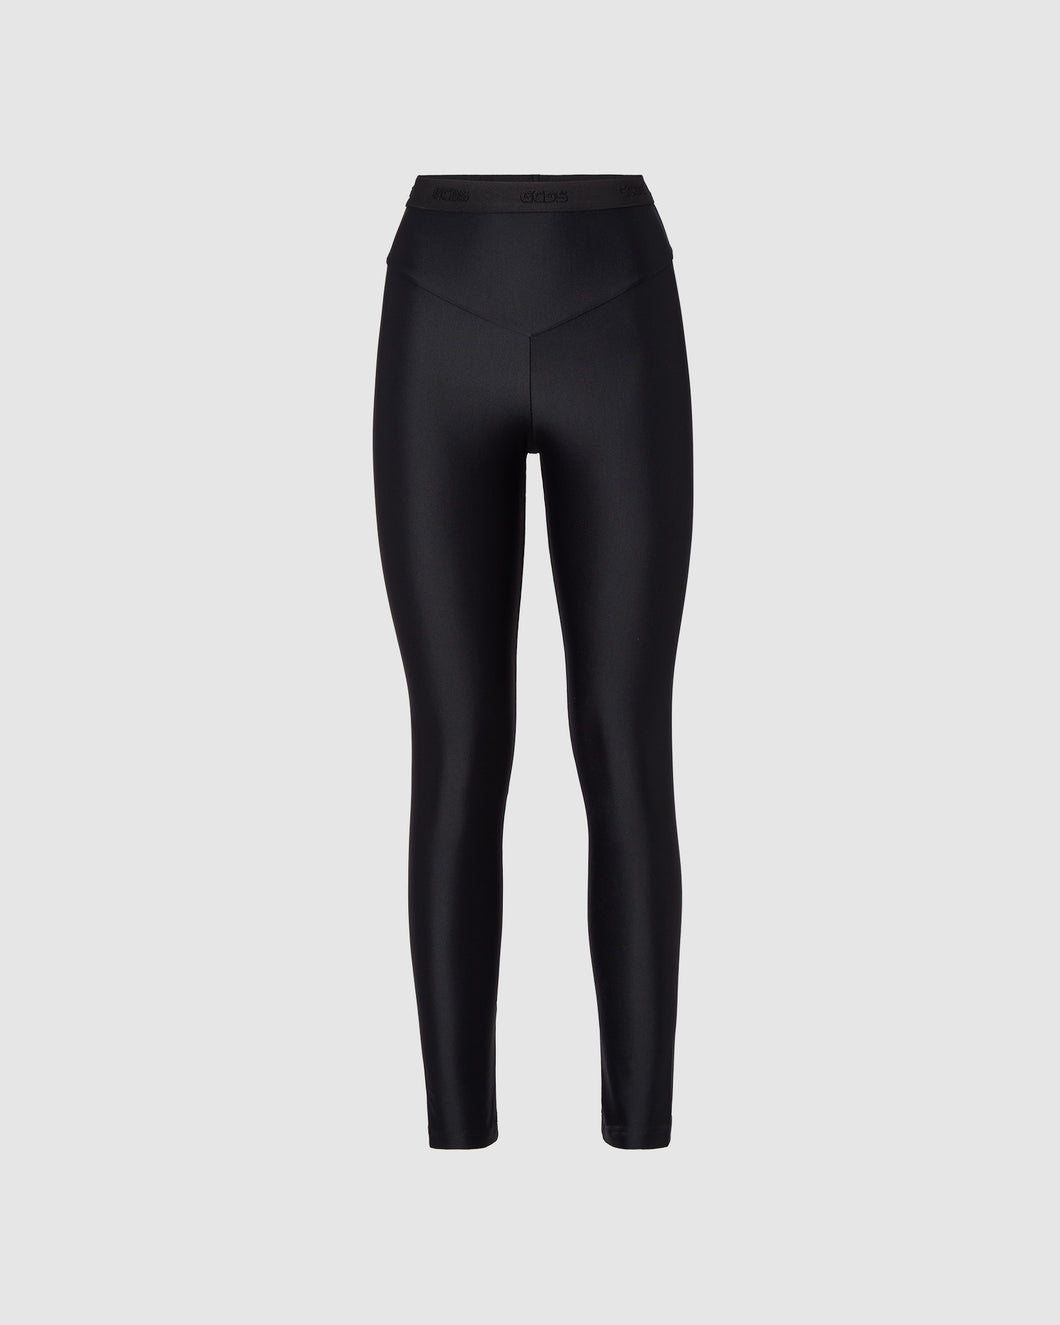 Gcds sporty leggings: Women Trousers Black | GCDS